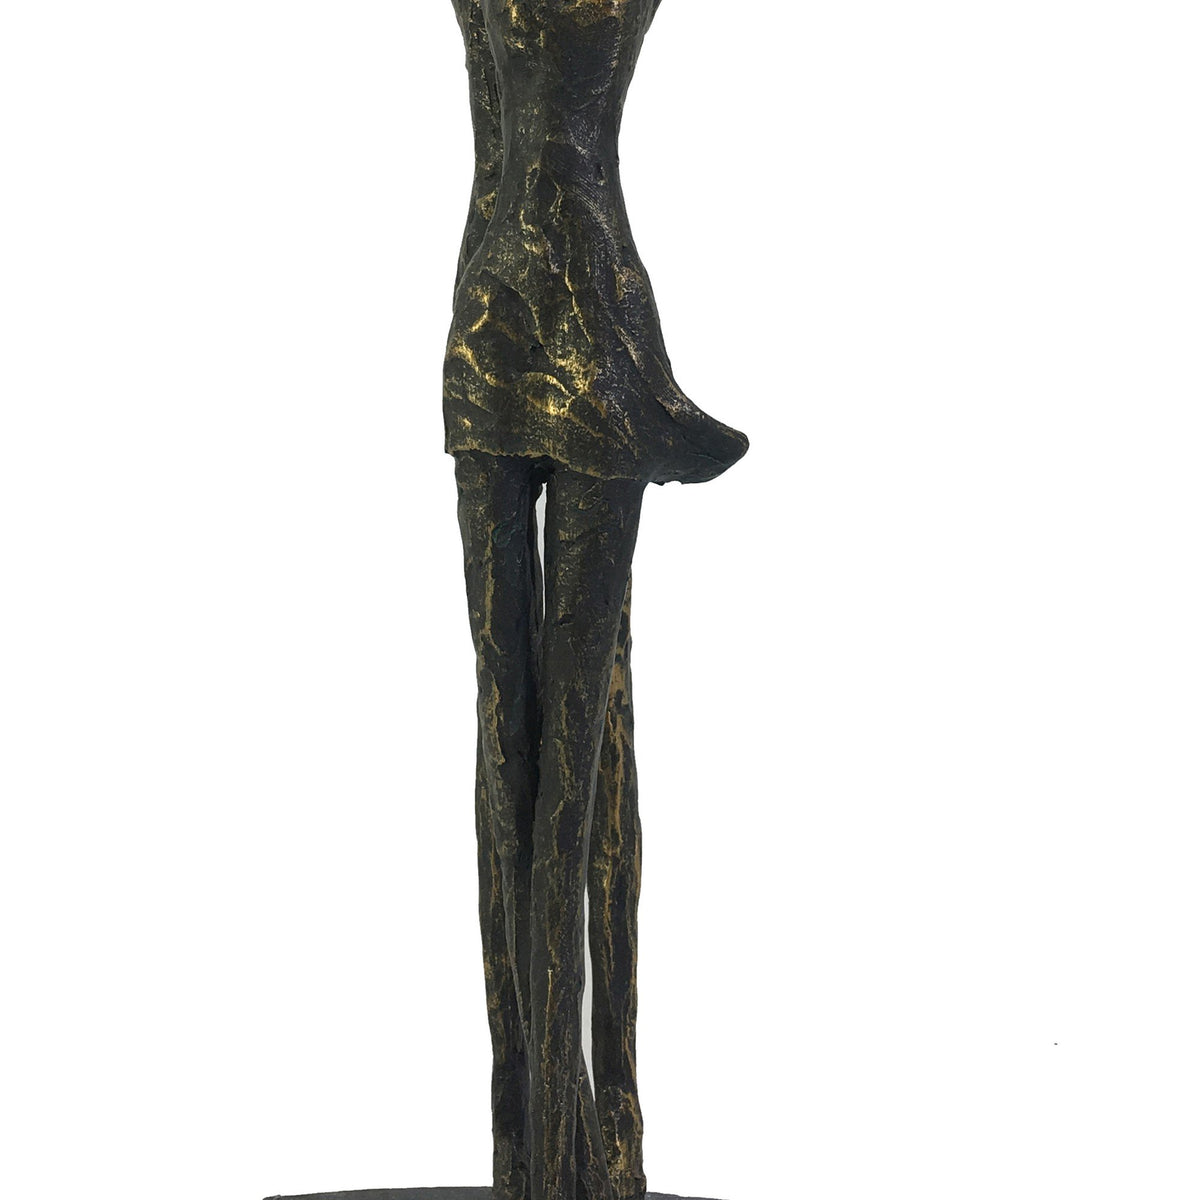 Polyresin Frame Titanic Inspired Sculpture, Bronze - BM221062